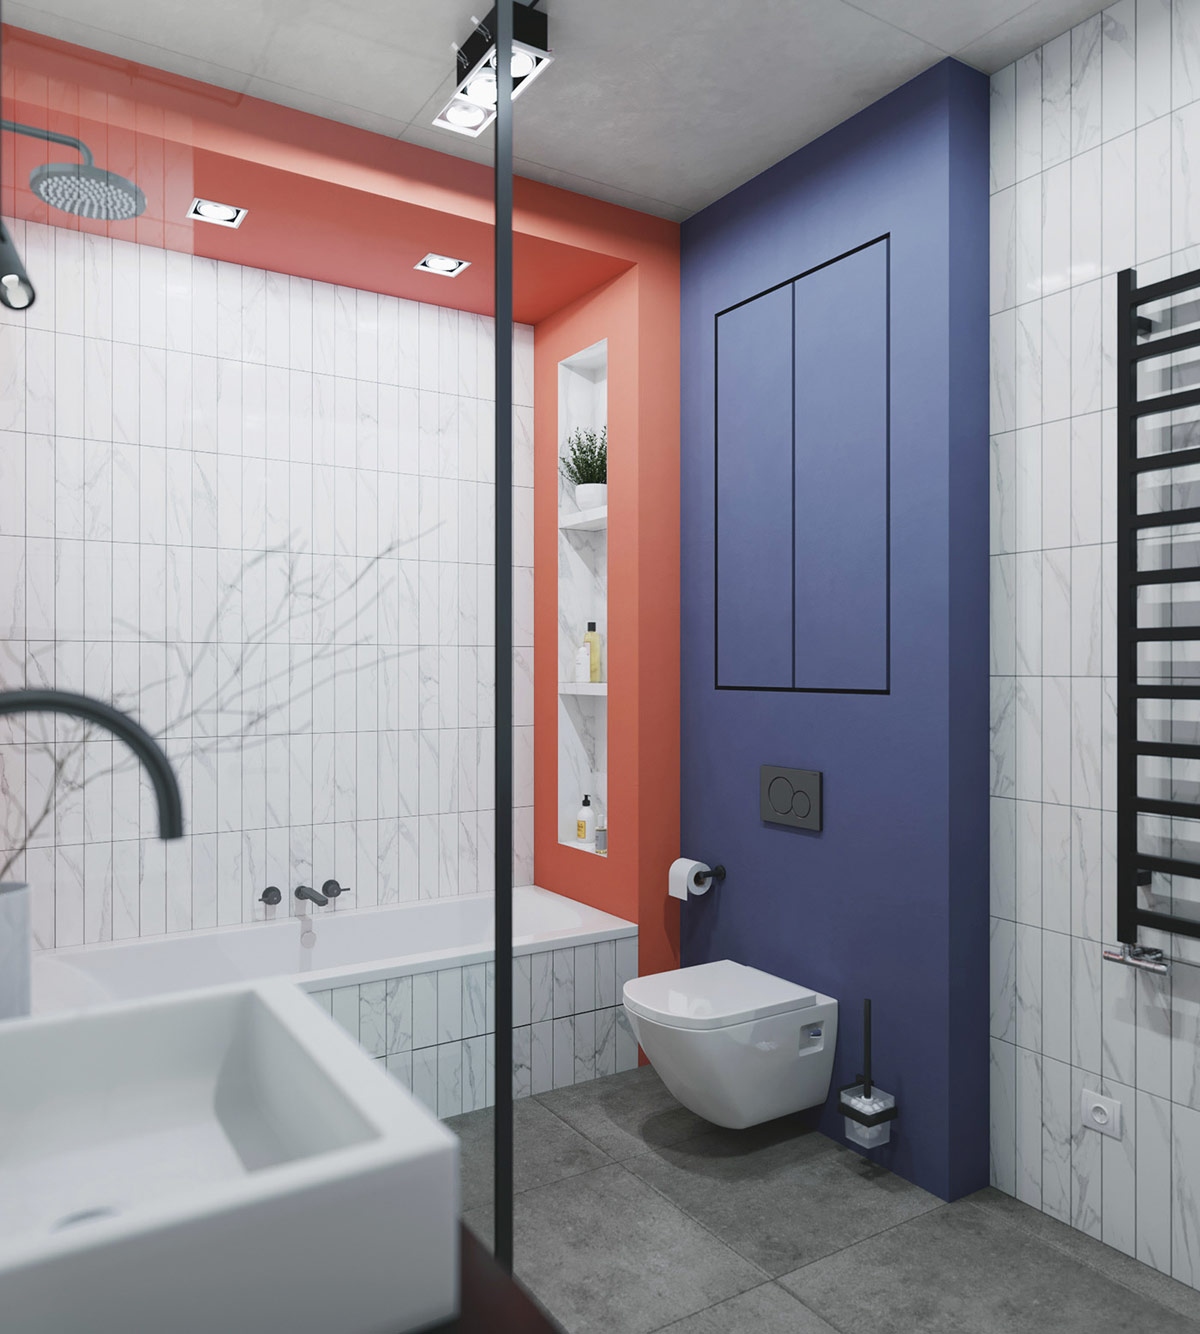 Trong phòng tắm, sự kết hợp độc đáo giữa gạch thẻ màu trắng cùng bức tường màu xanh và gạch thể hiện cá tính độc đáo của người sở hữu.